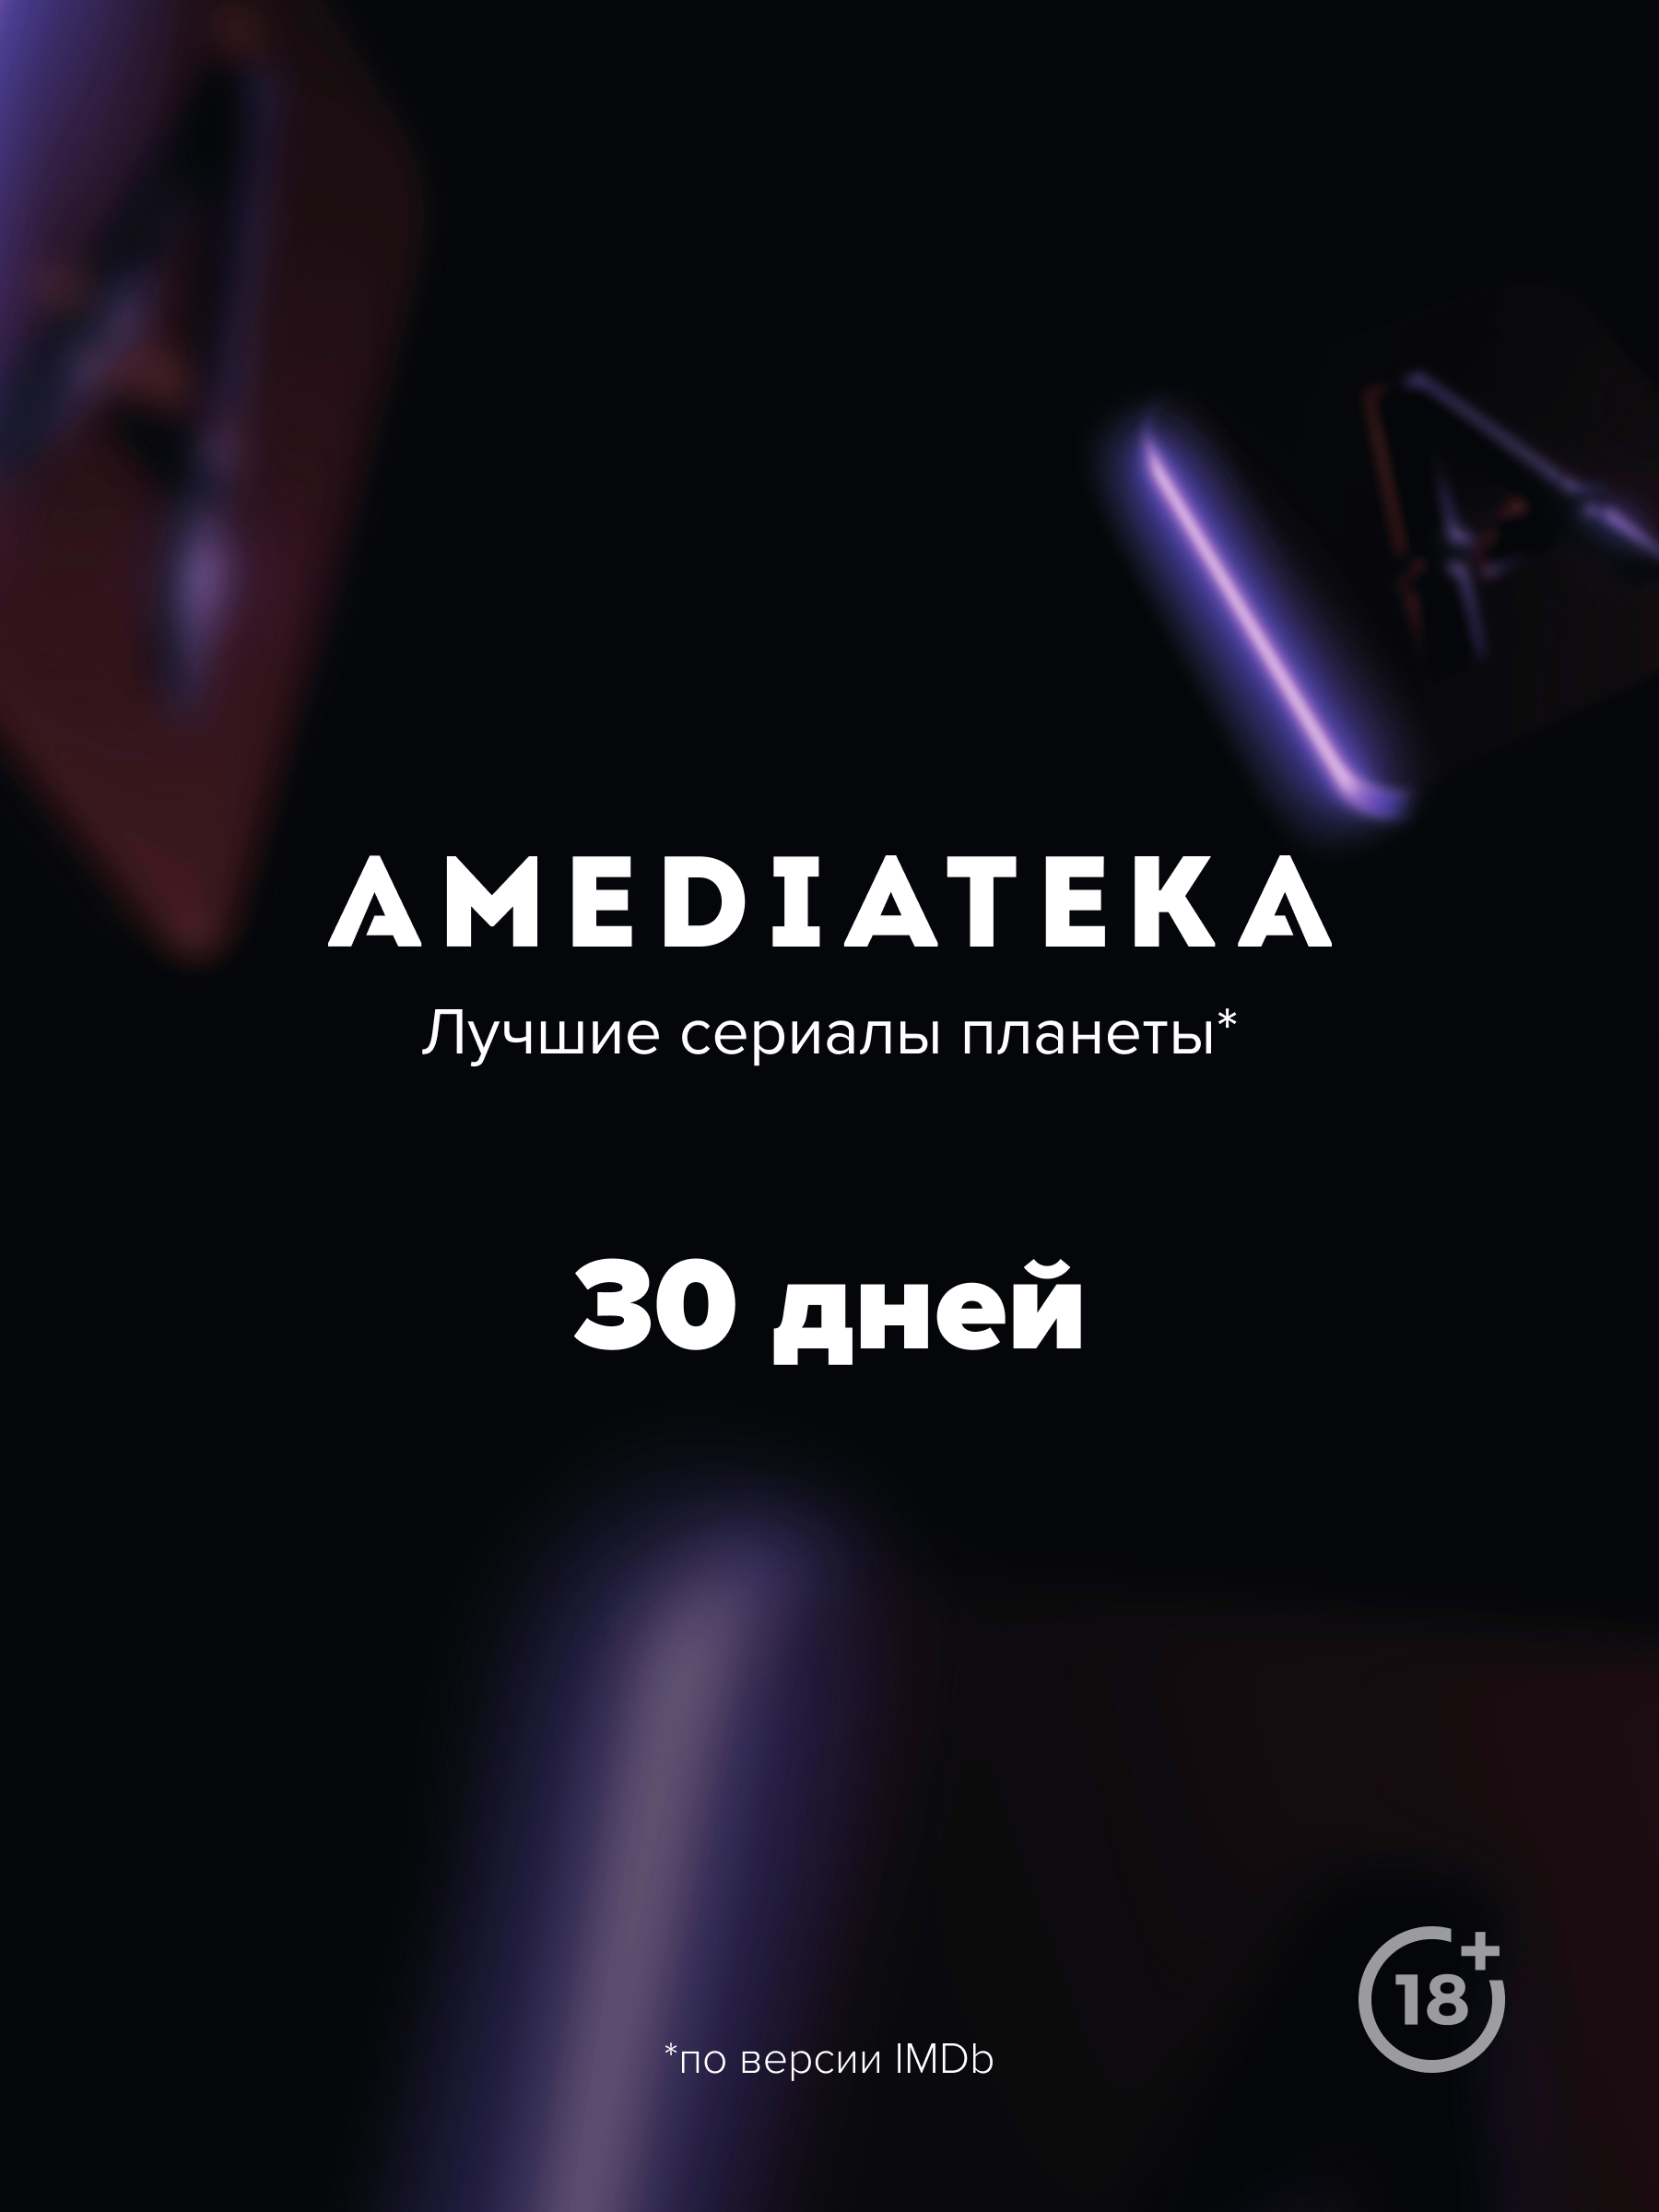 Онлайн-кинотеатр Amediateka (подписка на 30 дней) [Цифровая версия] (Цифровая версия) от 1С Интерес